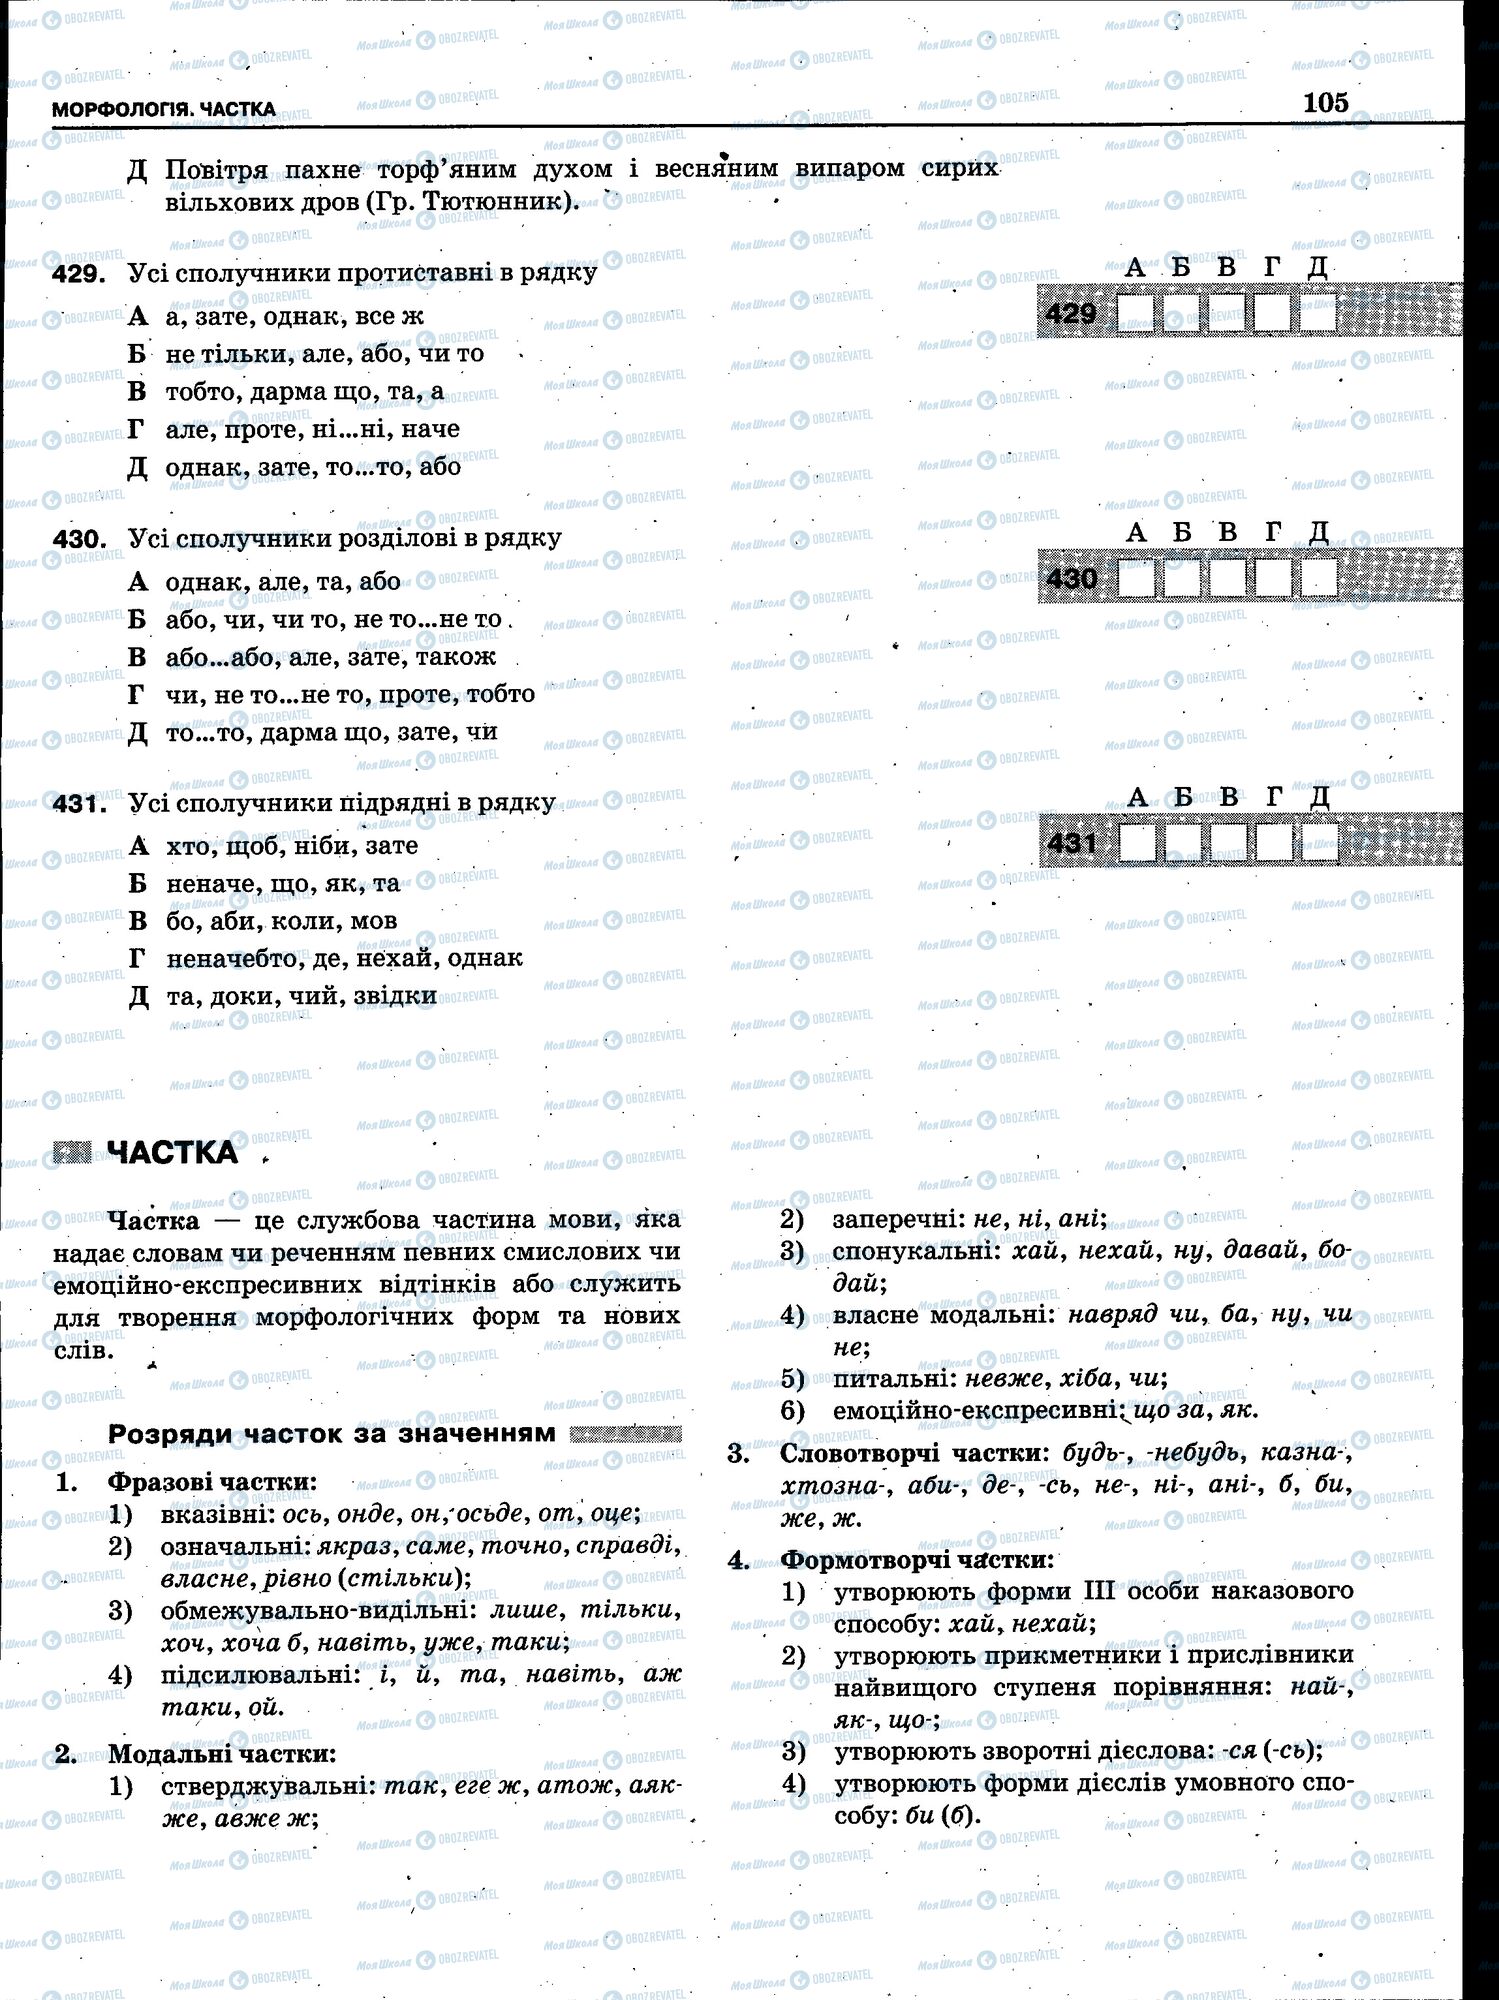 ЗНО Укр мова 11 класс страница 103